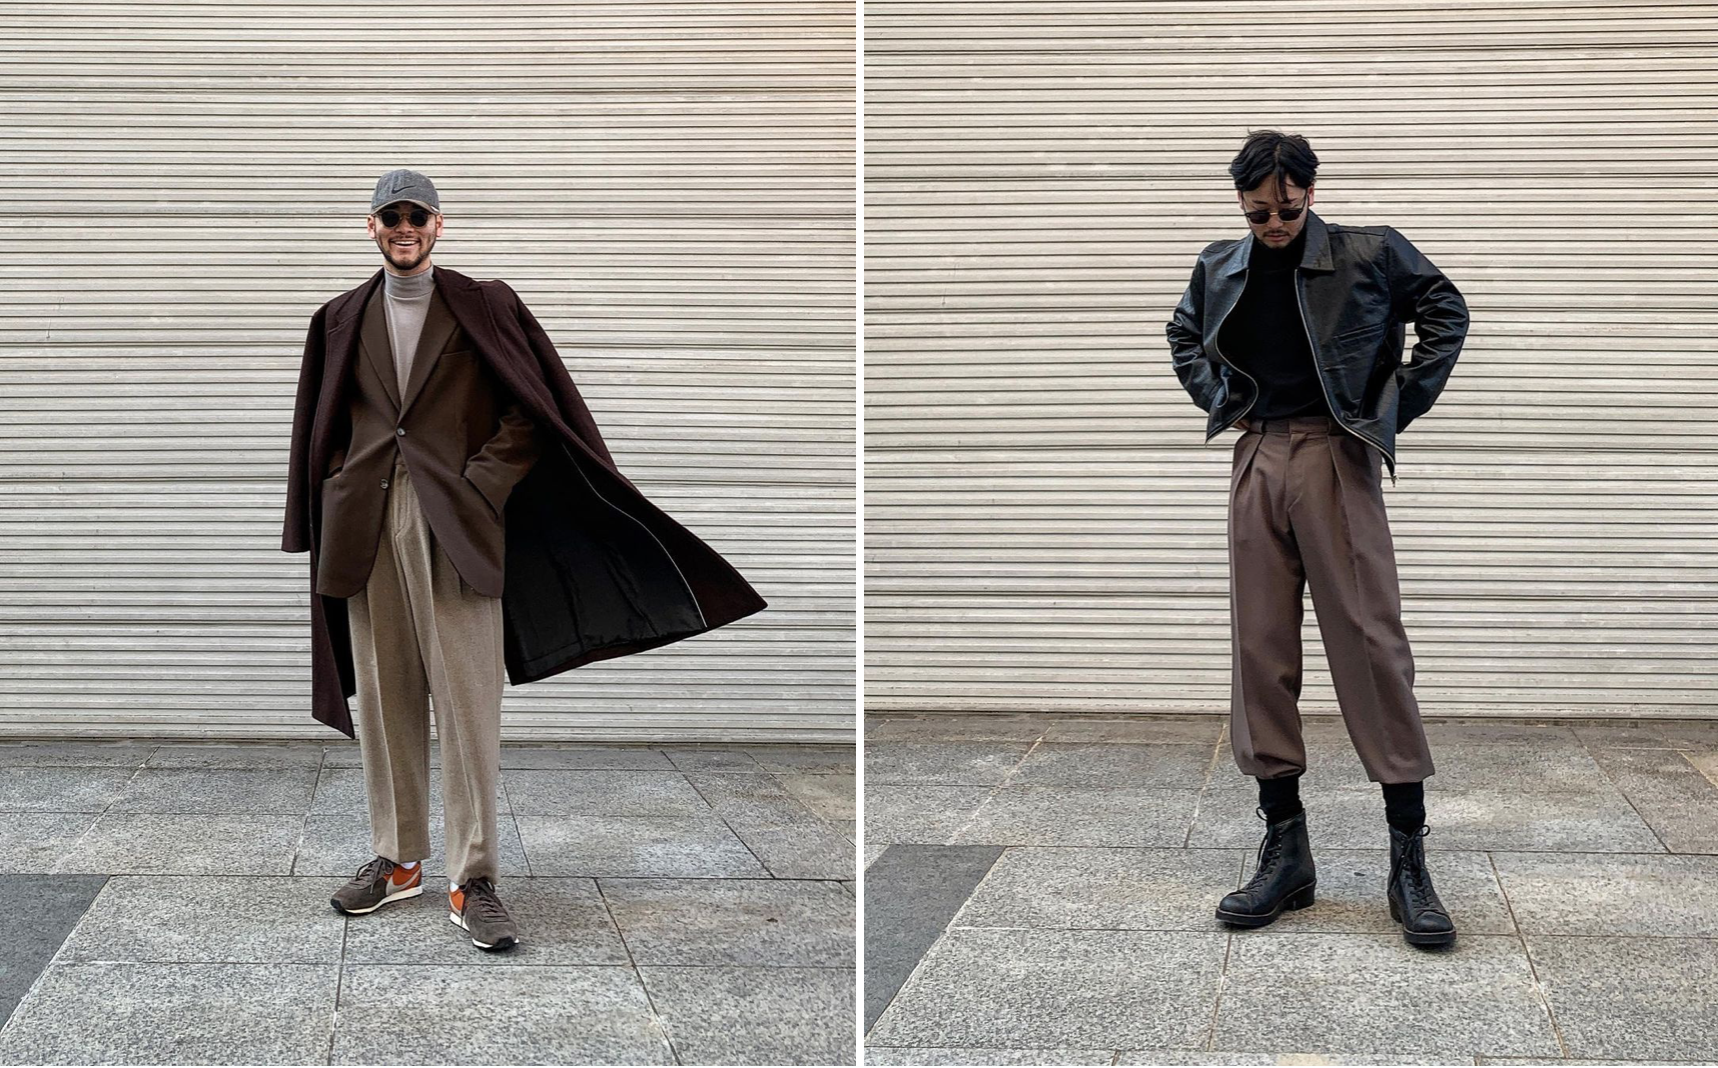 Kim Hyeong yêu thích phong cách layer-on-layer với những gam màu tông đất nam tính, mạnh mẽ. Những items như áo khoác dài, bomber cũng được nam blogger lựa chọn để thể hiện sự lãng tử.